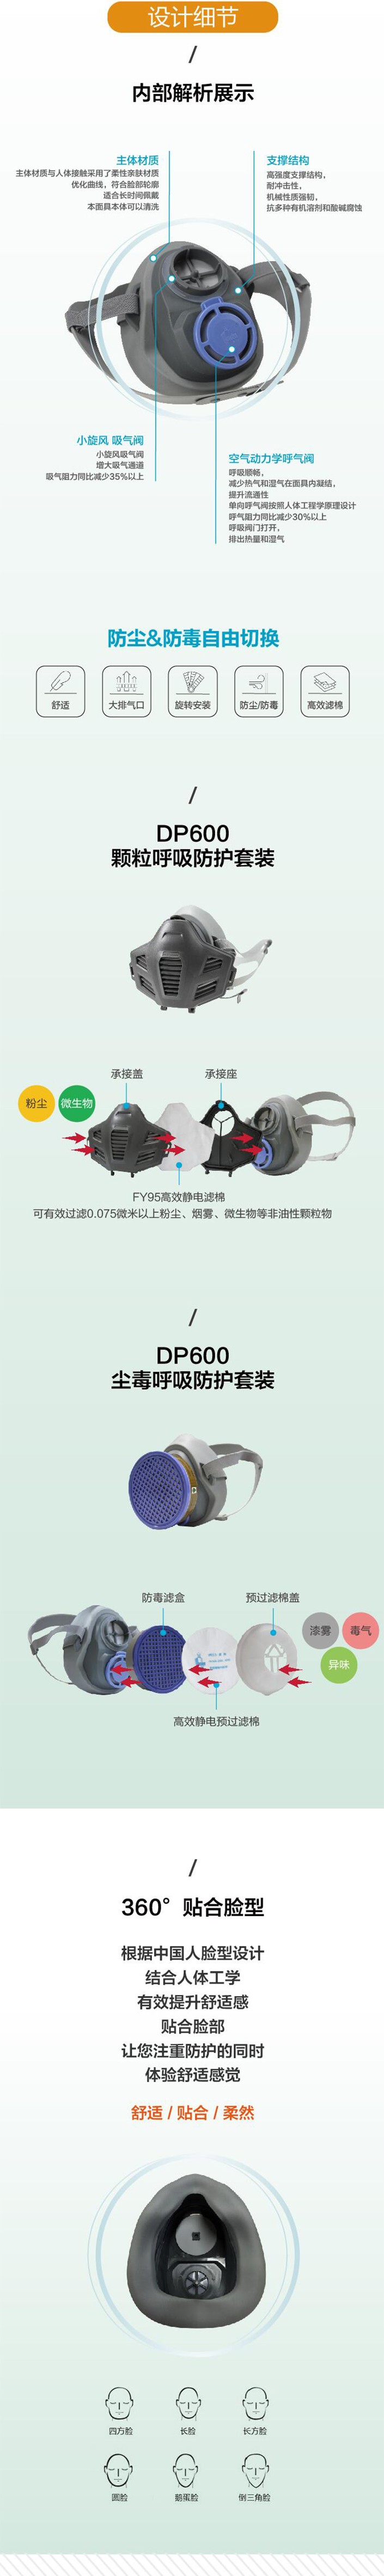 华信威保DP600Y单滤盒防尘防毒半面罩图片2